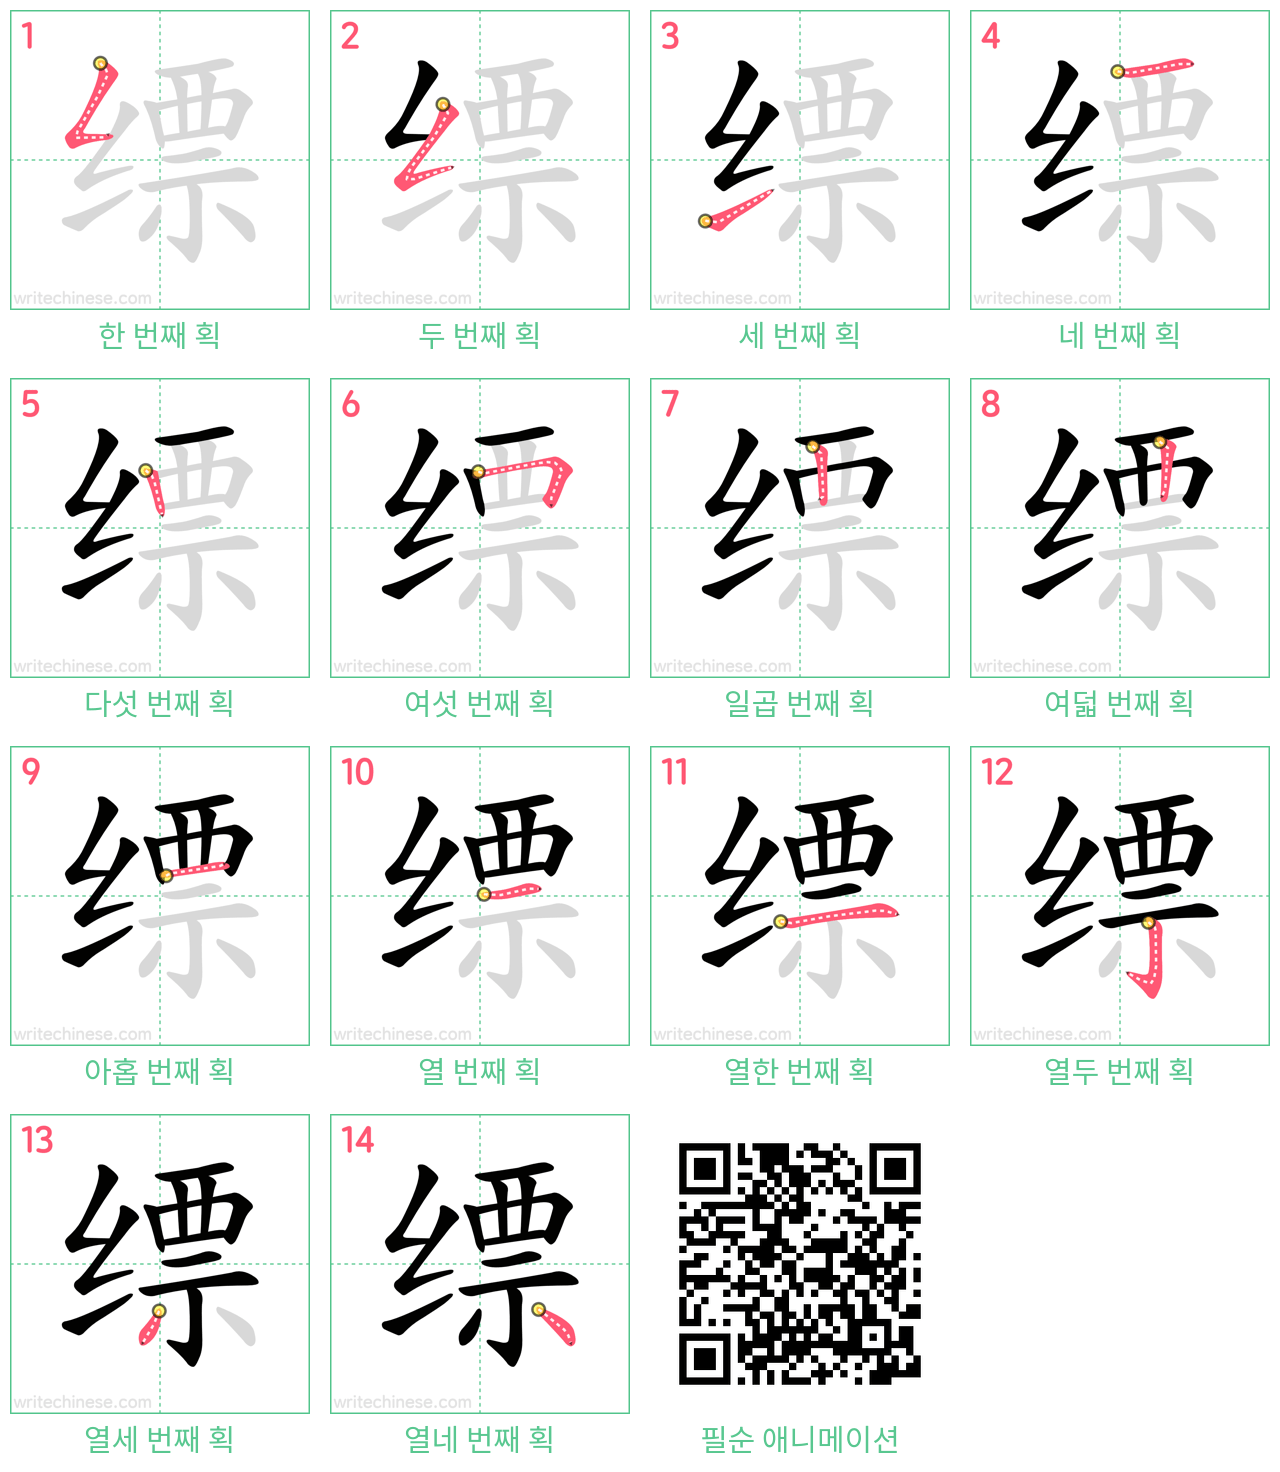 缥 step-by-step stroke order diagrams